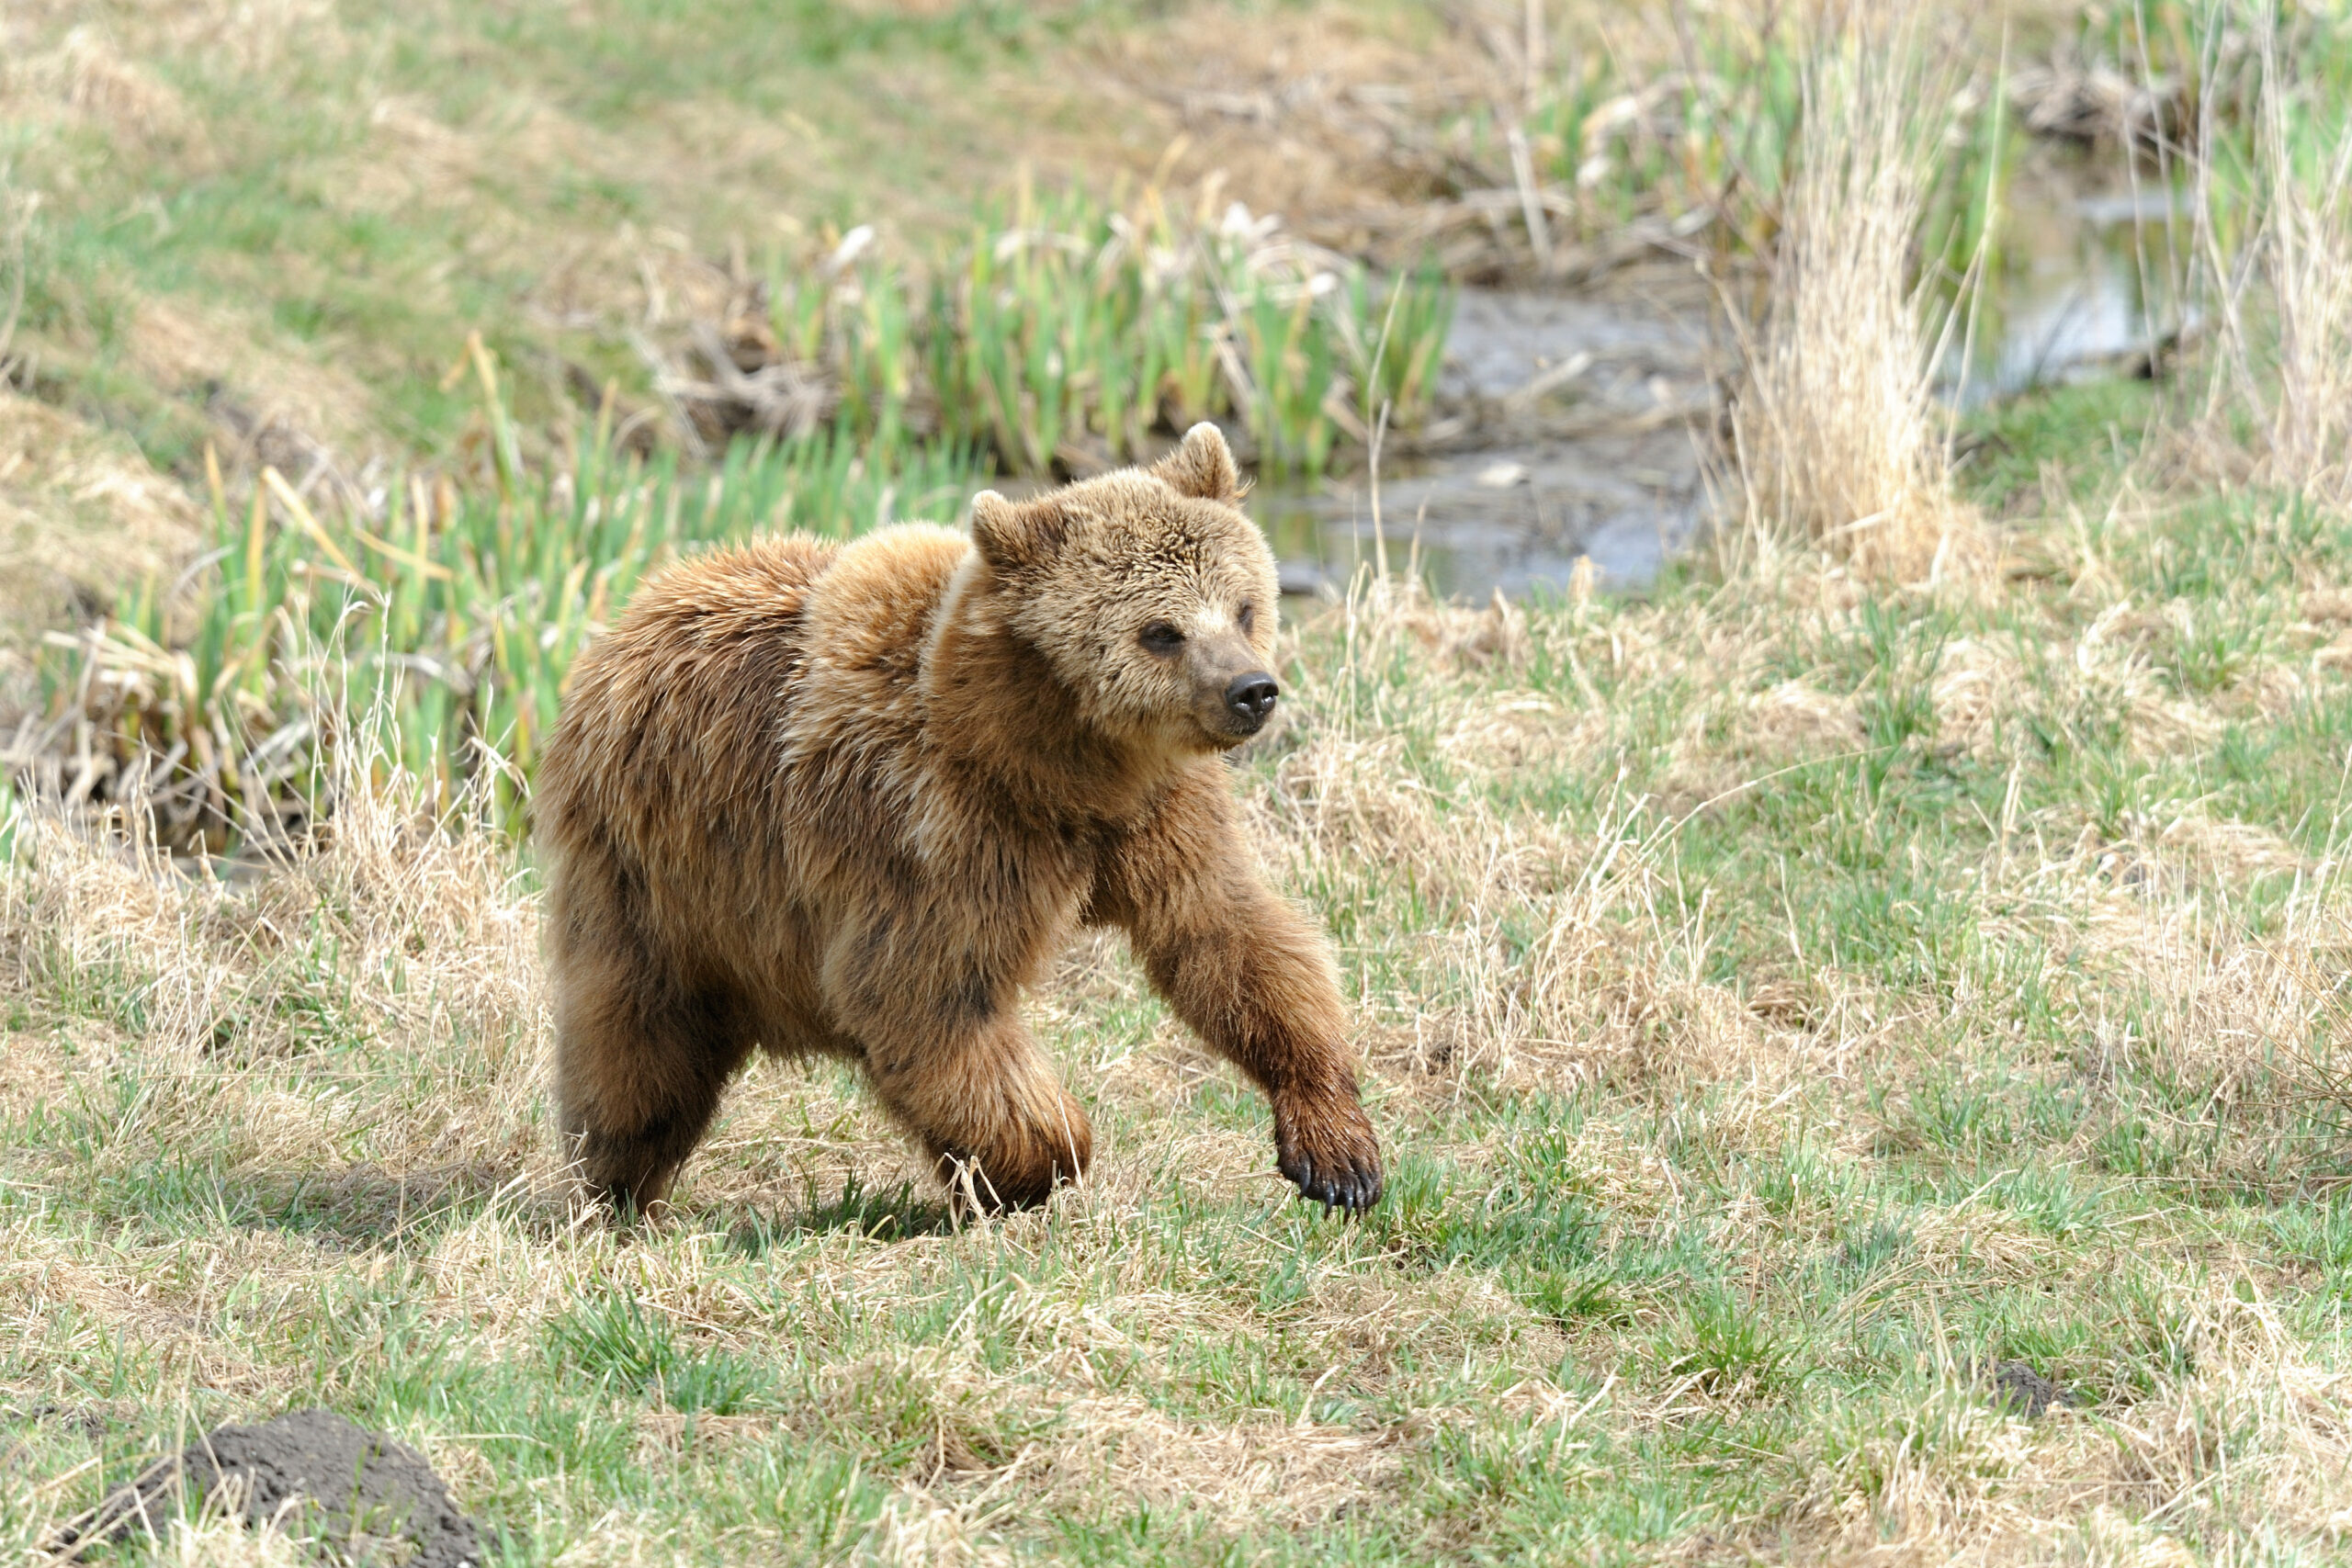 A young brown bear runs fast through a field. 